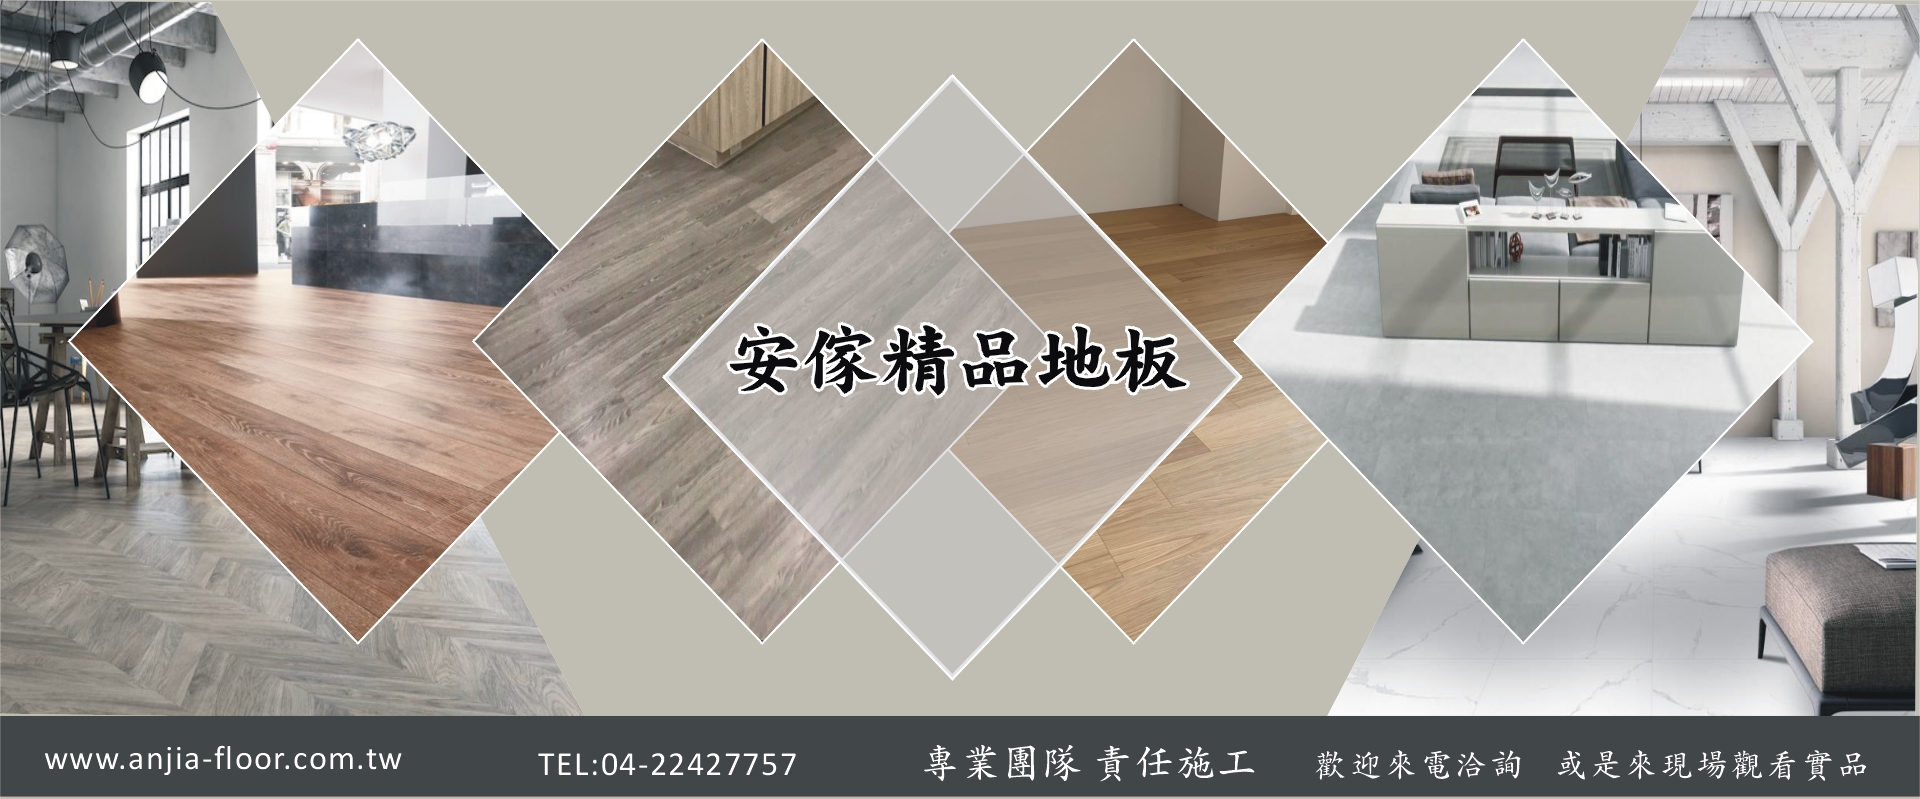 安傢木地板公司-台中木地板,4V倒角SPC石塑防水地板,石紋SPC石塑防水地板